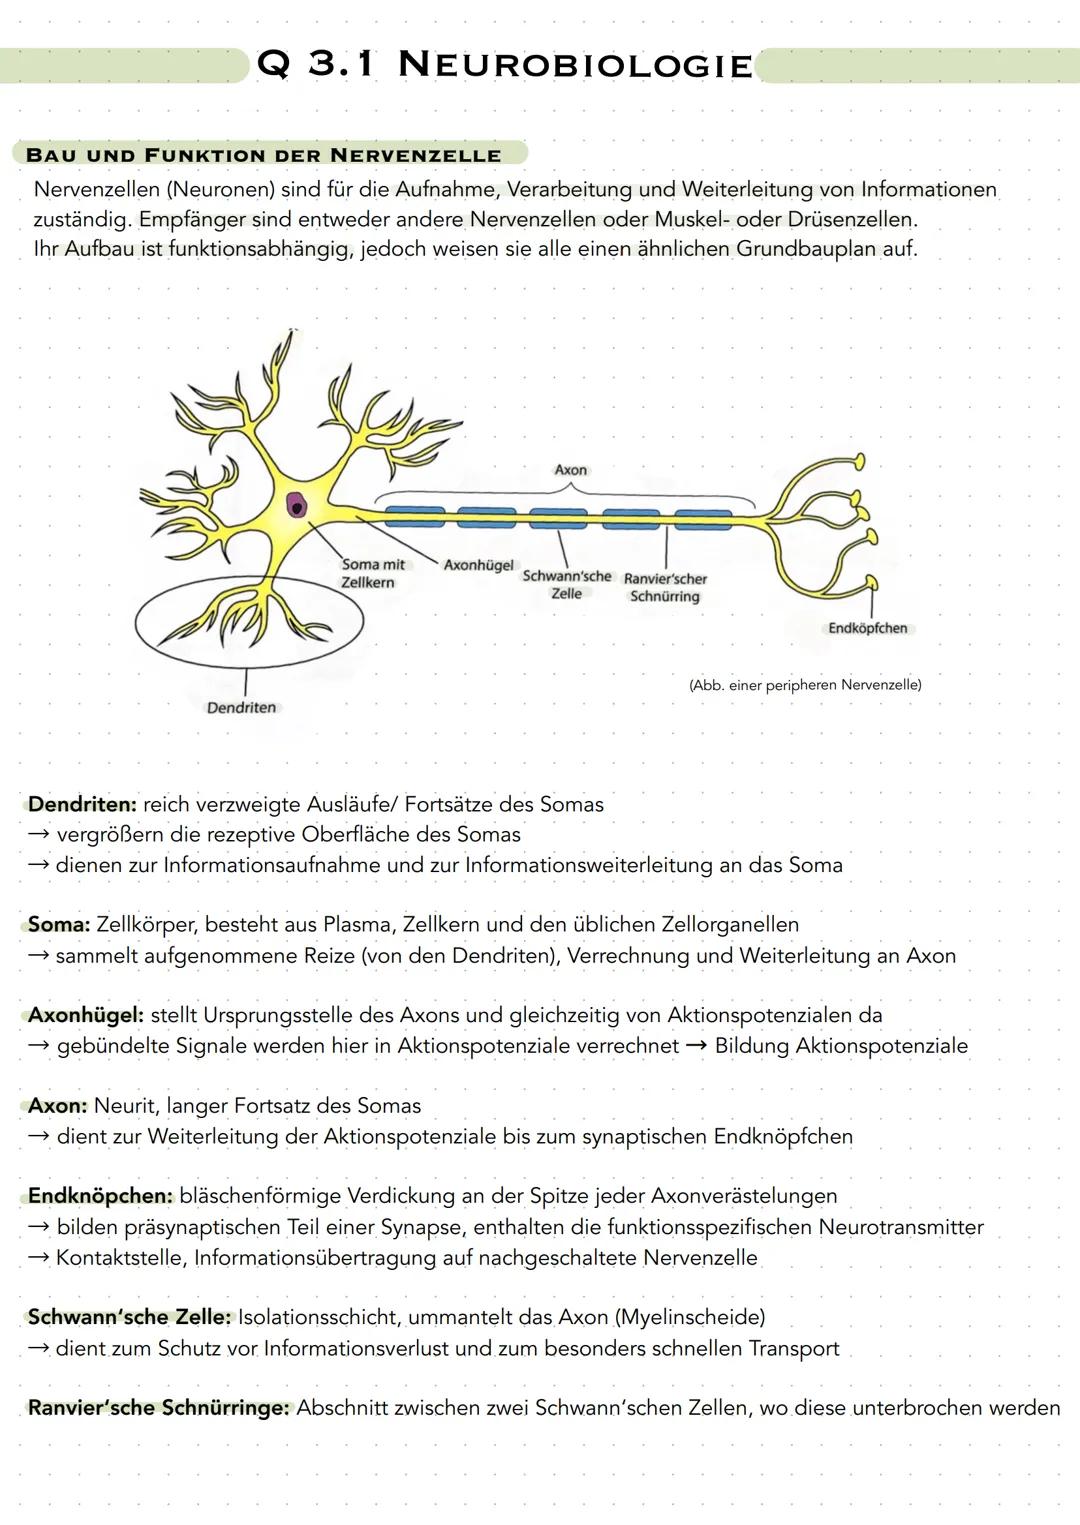 Q 3.1 NEUROBIOLOGIE
BAU UND FUNKTION DER NERVENZELLE
Nervenzellen (Neuronen) sind für die Aufnahme, Verarbeitung und Weiterleitung von Infor